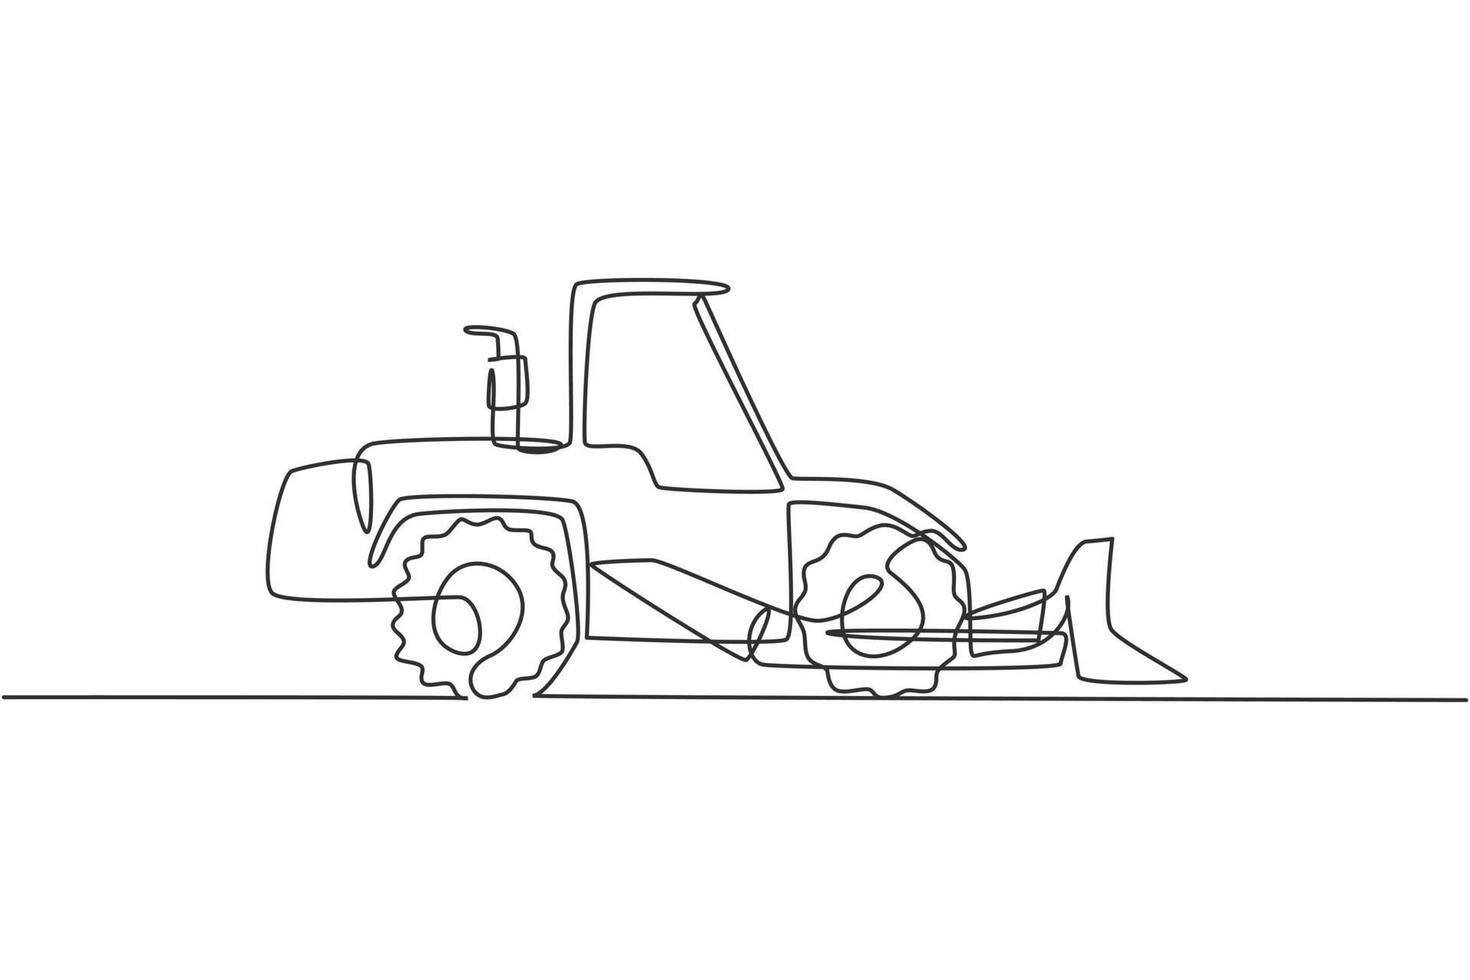 un dibujo de línea continua de bulldozer para pavimentar y excavar la carretera, vehículo comercial. concepto de equipo de camiones de construcción pesada. Ilustración de vector gráfico de diseño de dibujo de línea única dinámica